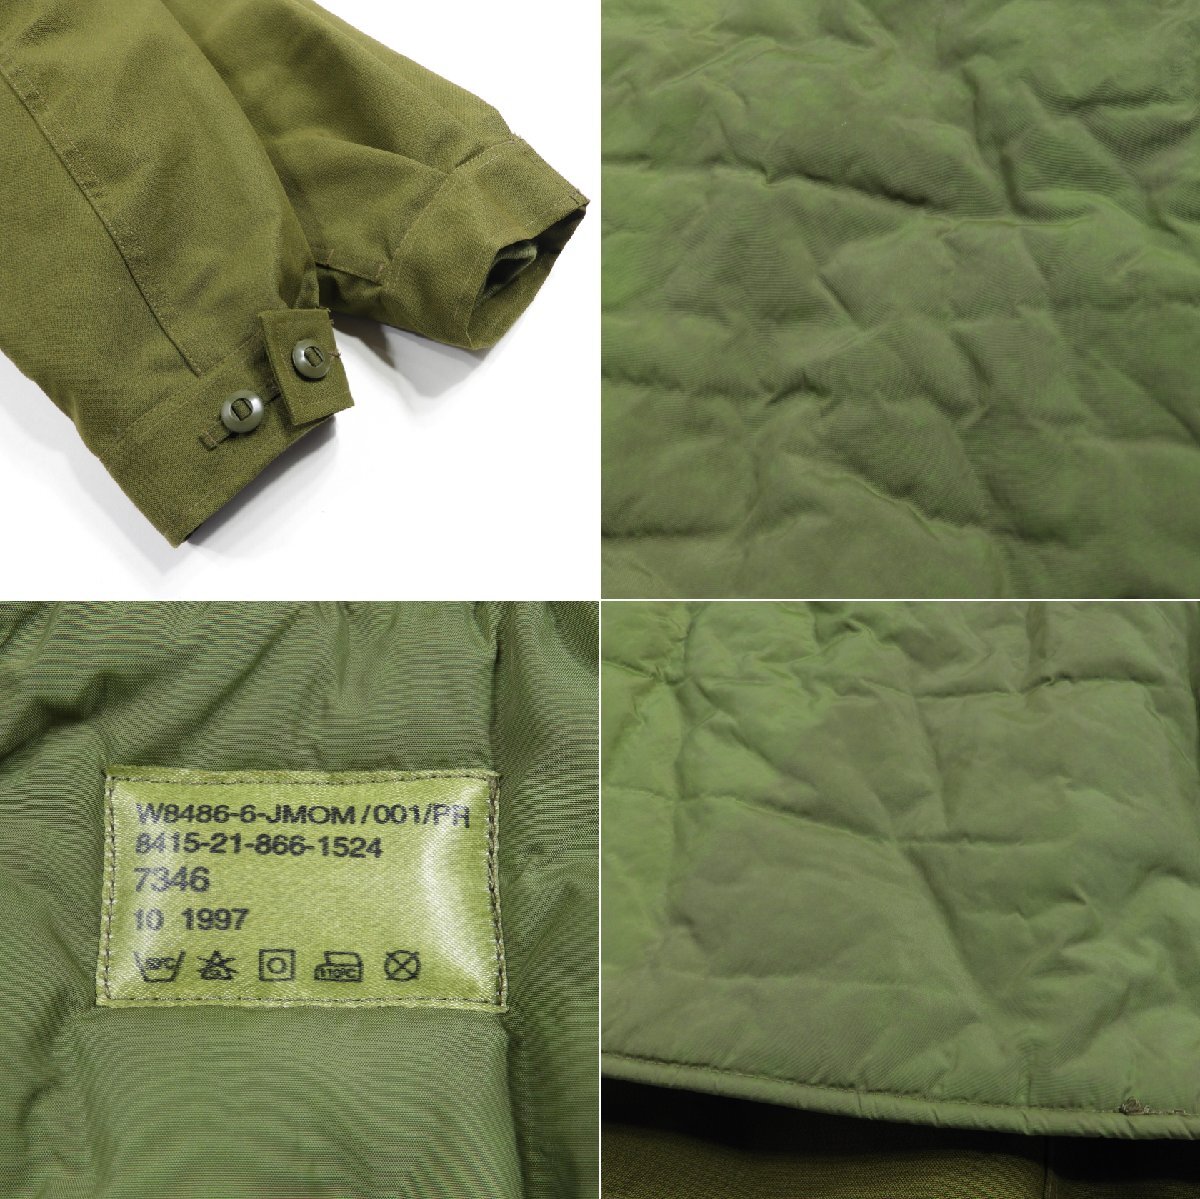 90's カナダ軍 コンバットジャケット #18101 オールド ヴィンテージ アメカジ ミリタリー 実物 フィールドジャケットの画像6